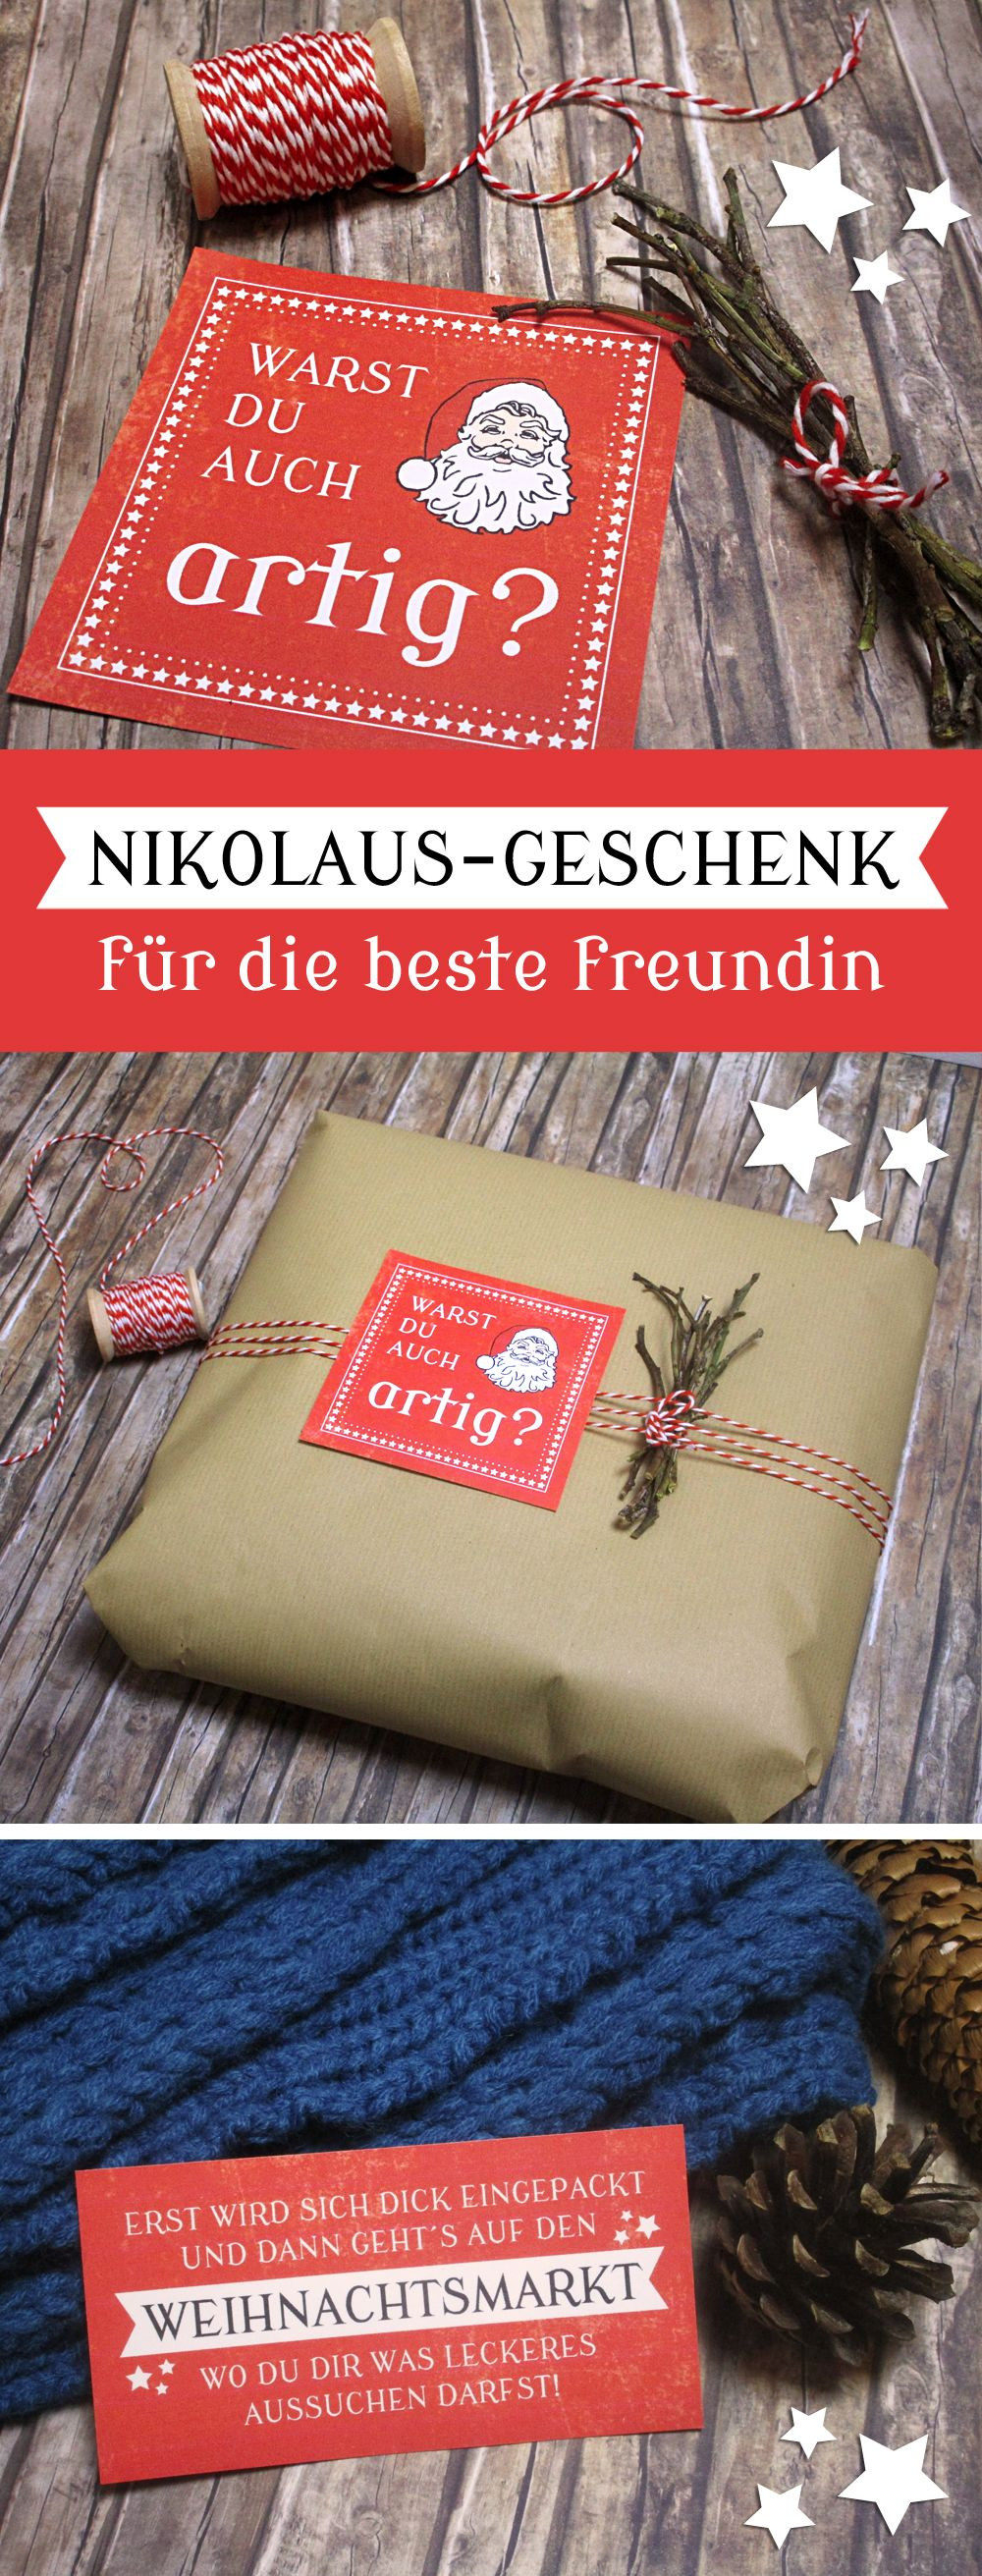 Nikolaus Geschenke Für Freundin
 Geschenkidee für beste Freundin zum Nikolaus